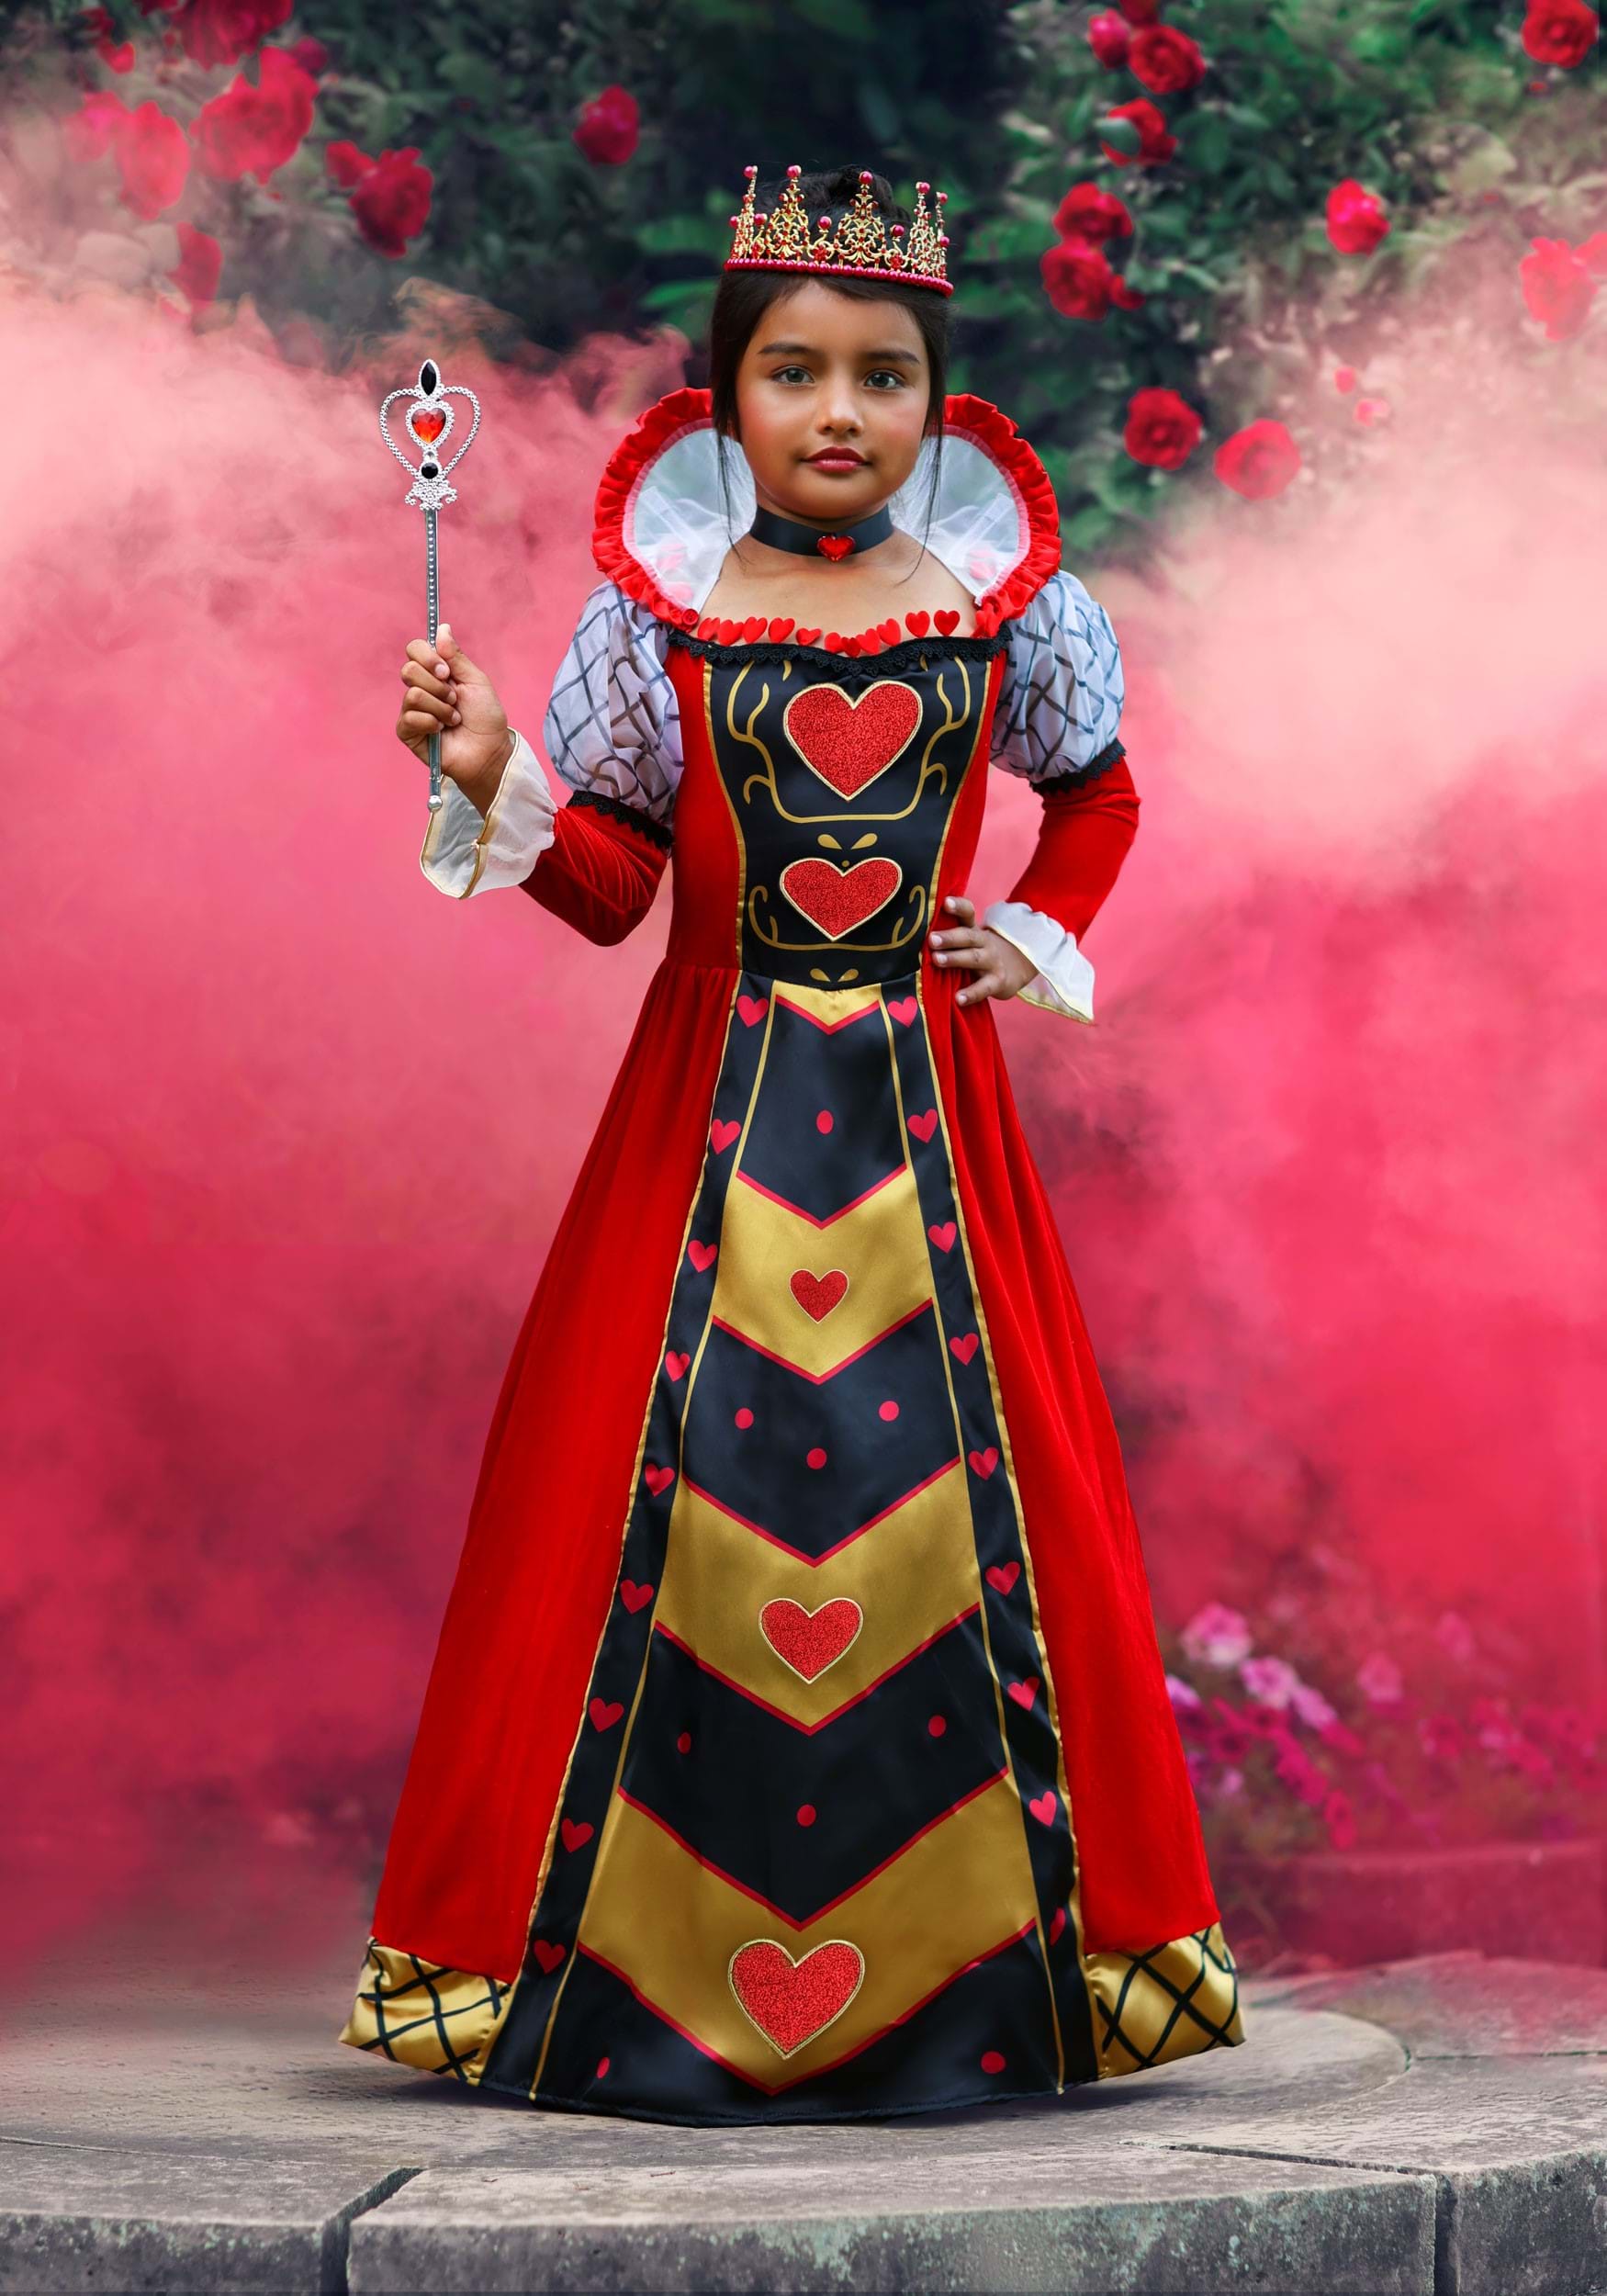 Buy Krrish Movie Superhero Kids Fancy Dress Costume Online in India